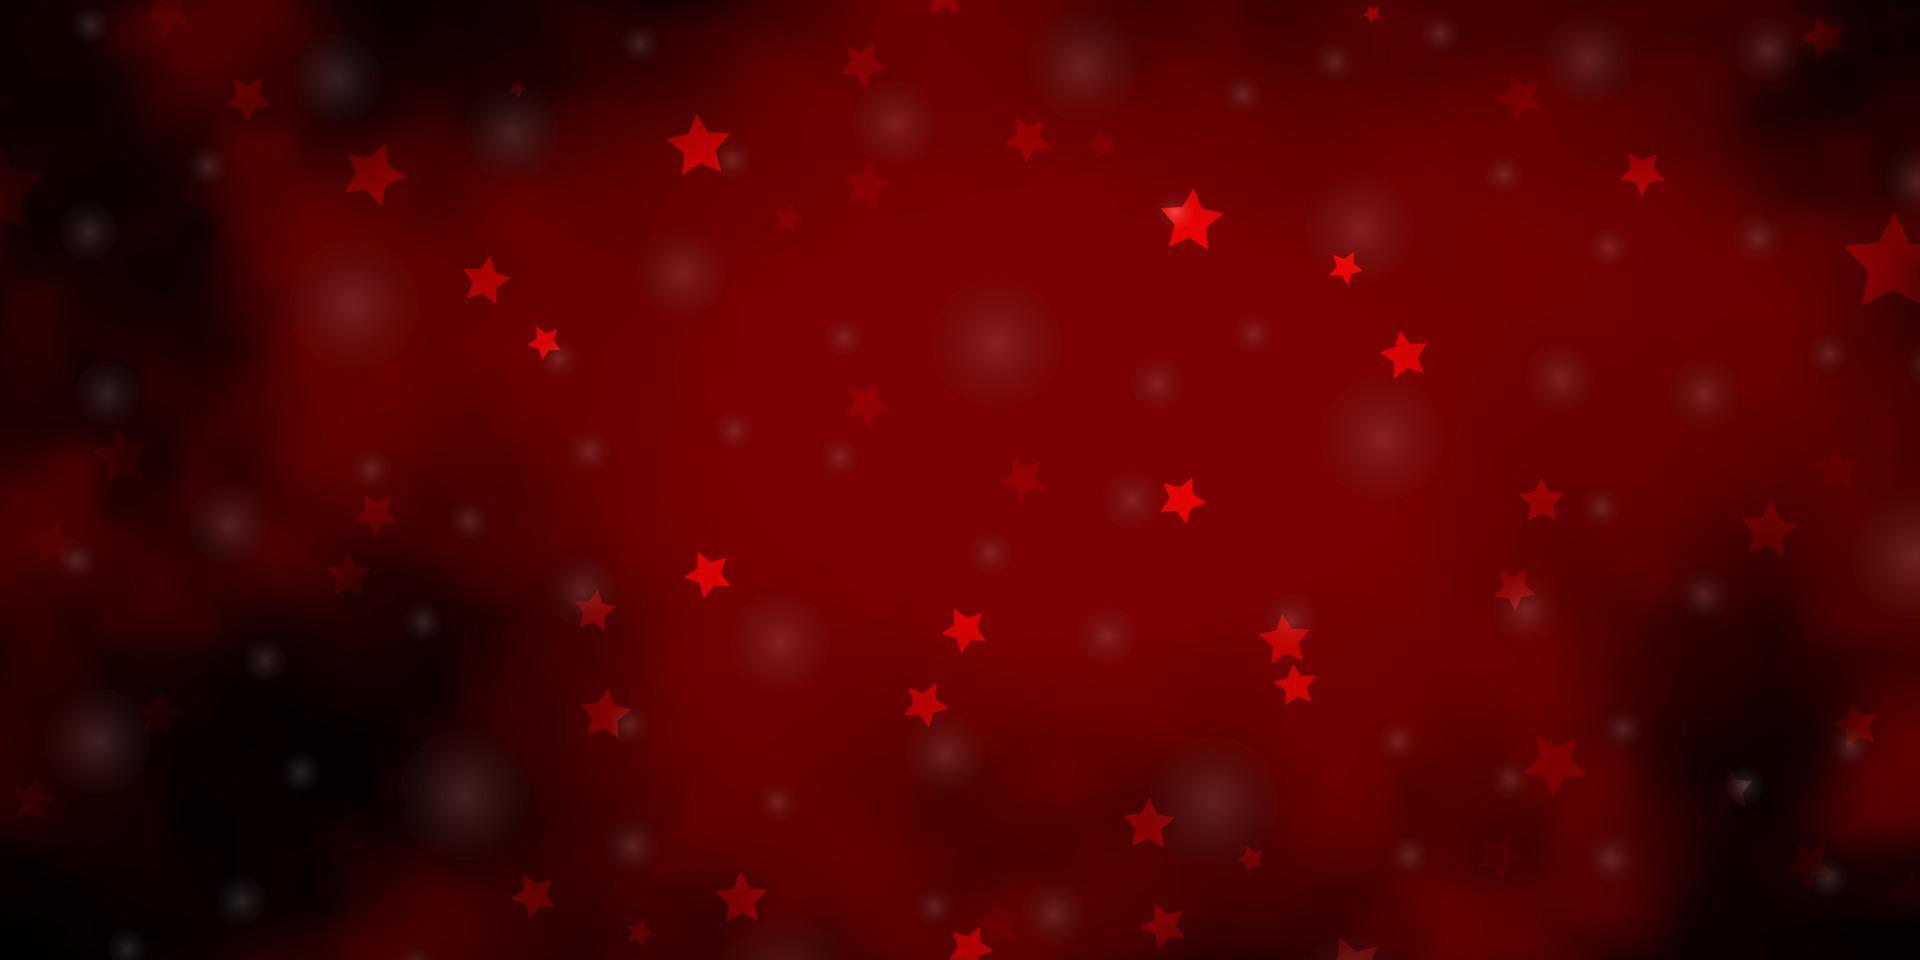 mörk röd vektor bakgrund med små och stora stjärnor.